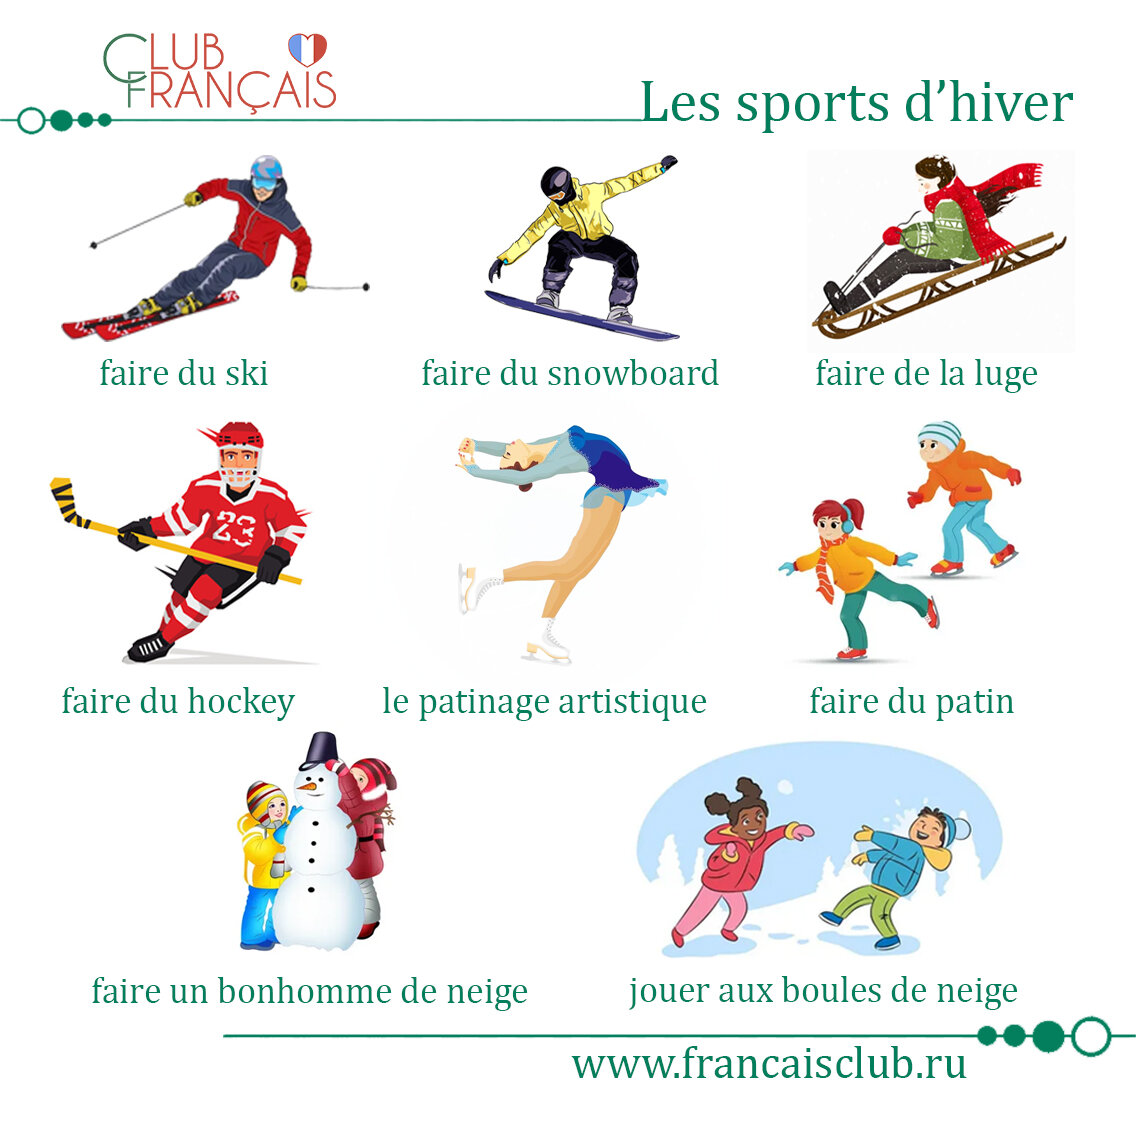 Нравится ли вам спорт. Самые популярные виды спорта во Франции.